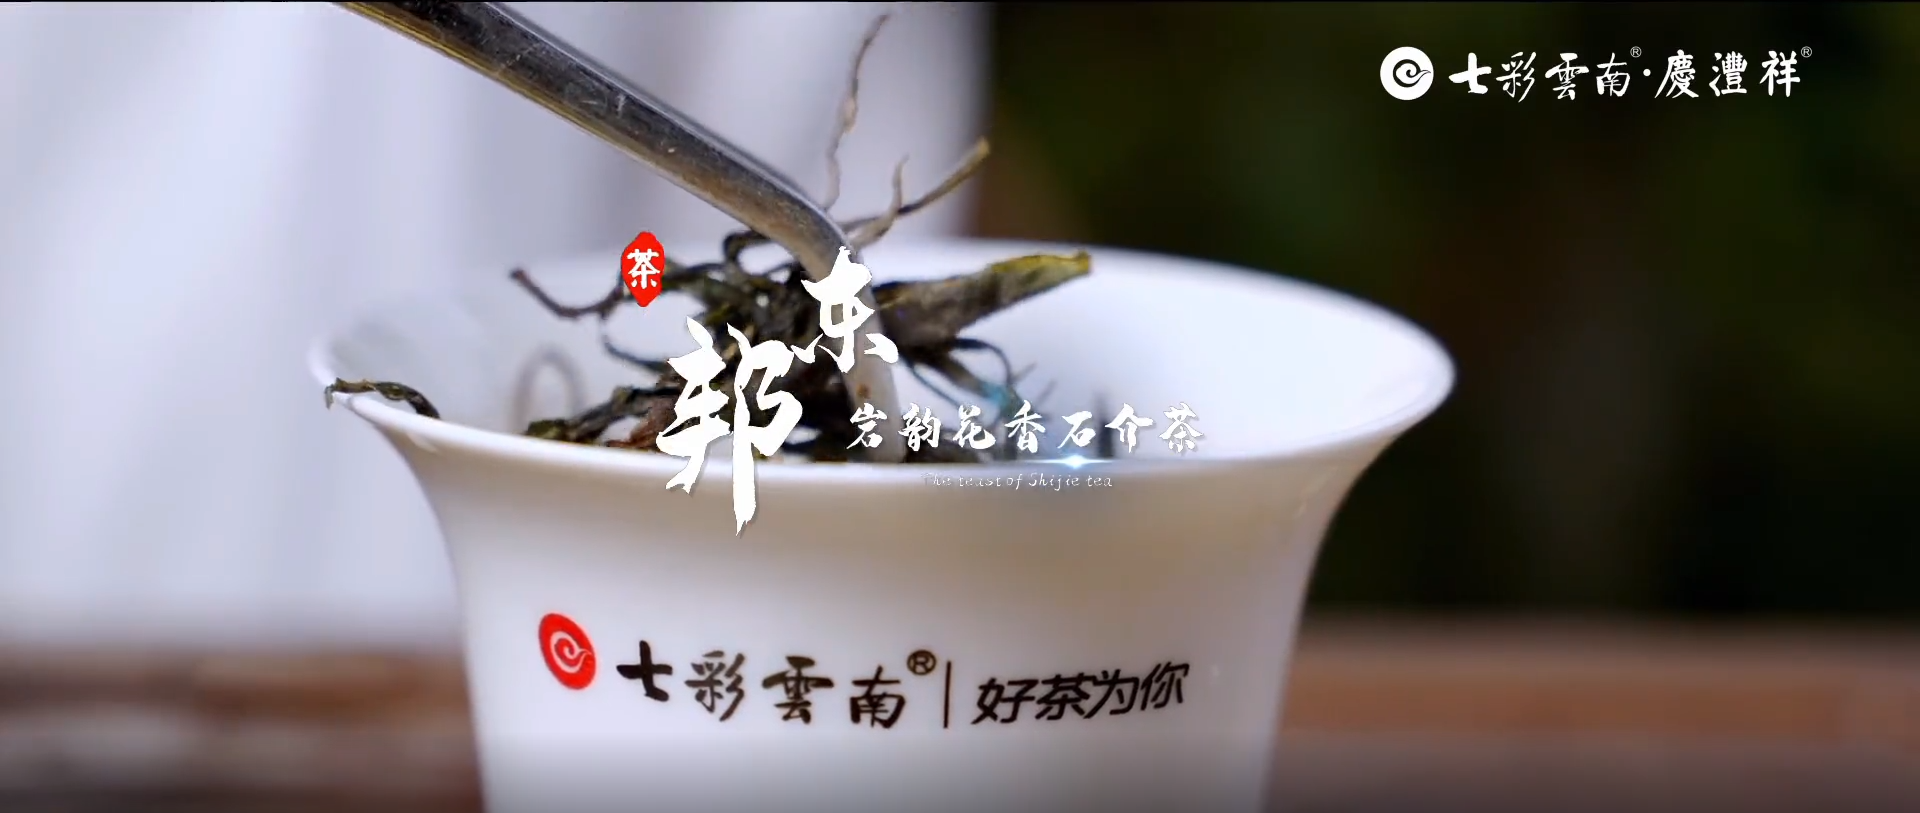 2021寻茶记深度视频丨专家茶人探山识茶——岩韵花香石介茶